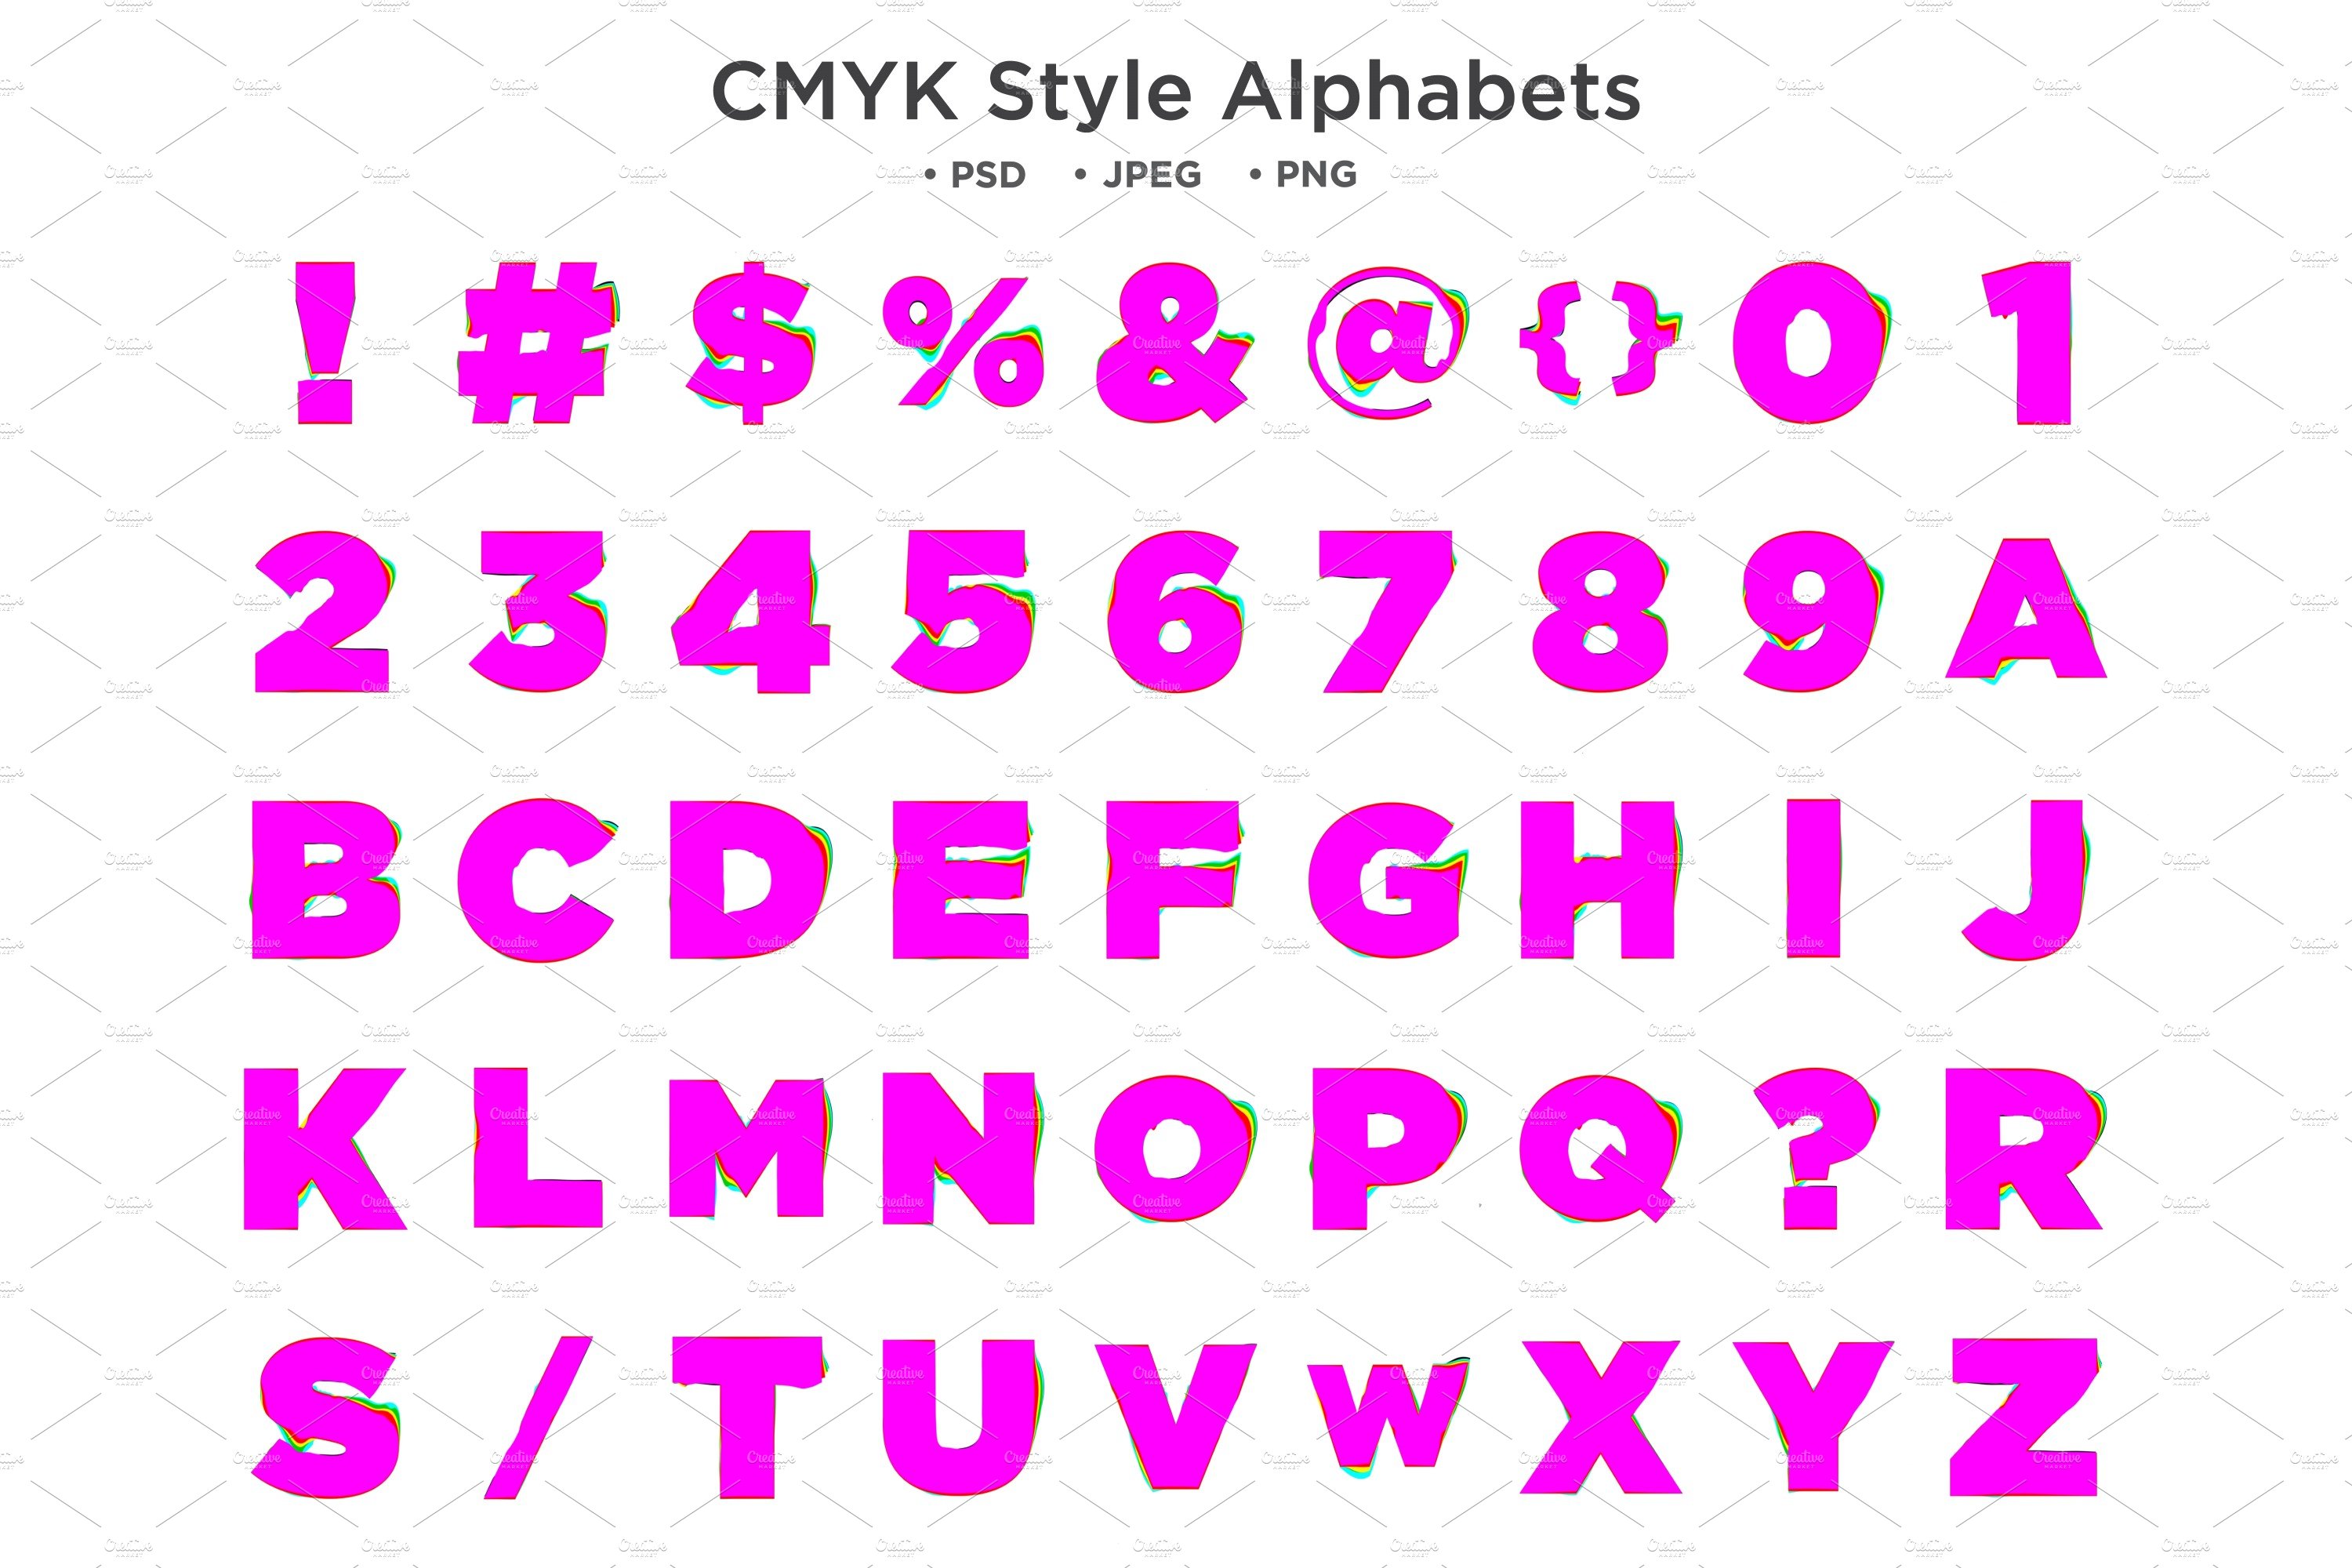 CMYK Style Alphabet, abc Typographycover image.